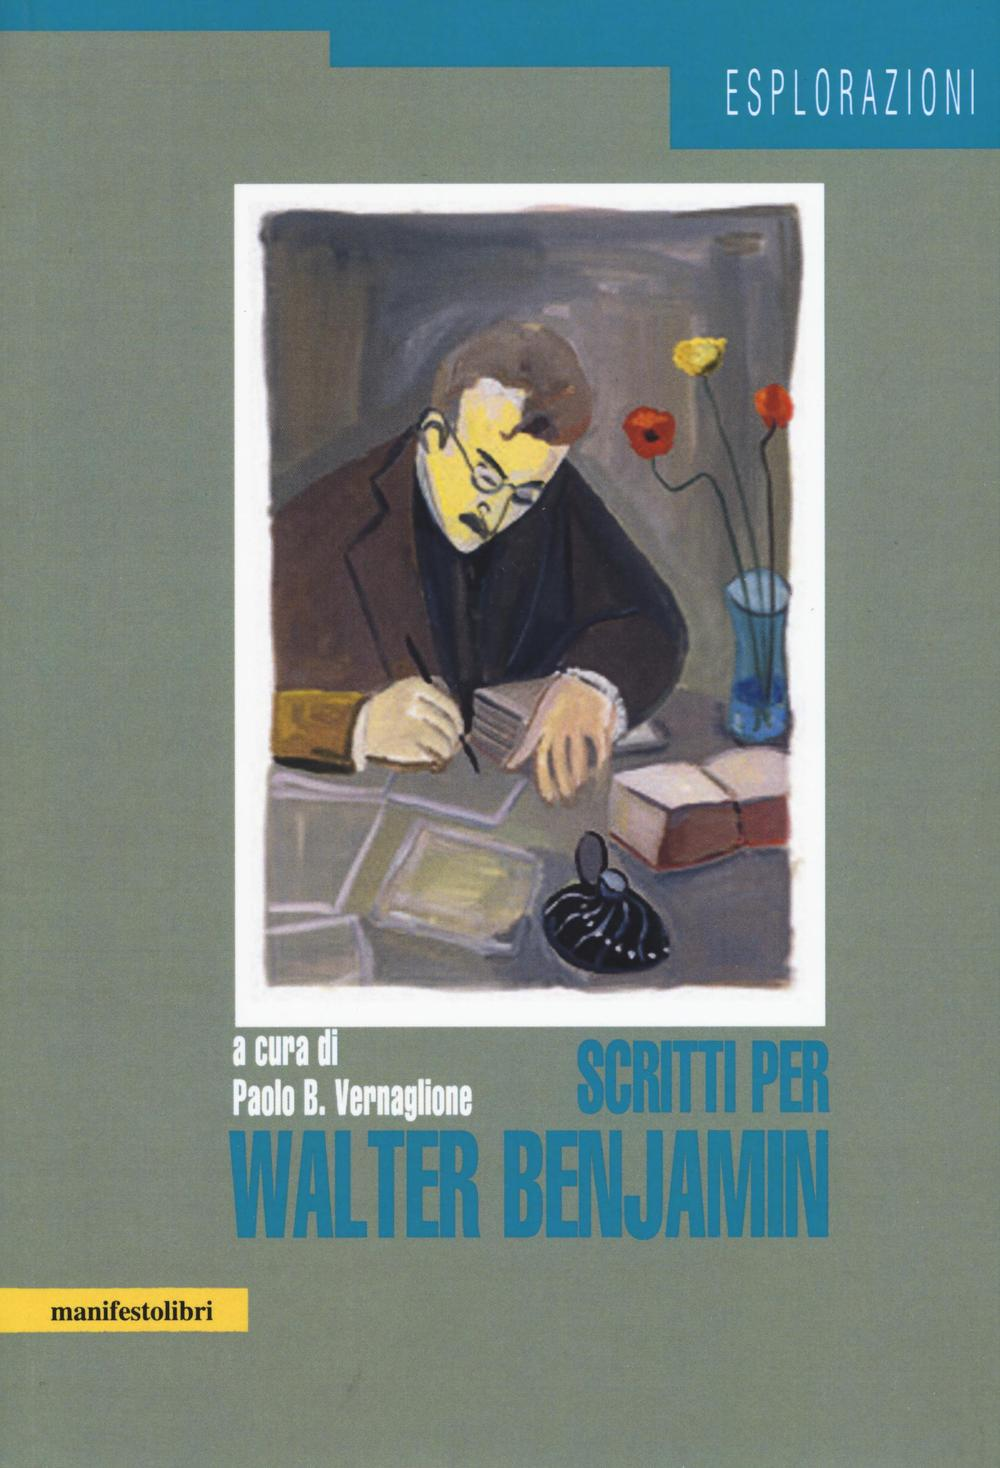 Image of Scritti per Walter Benjamin